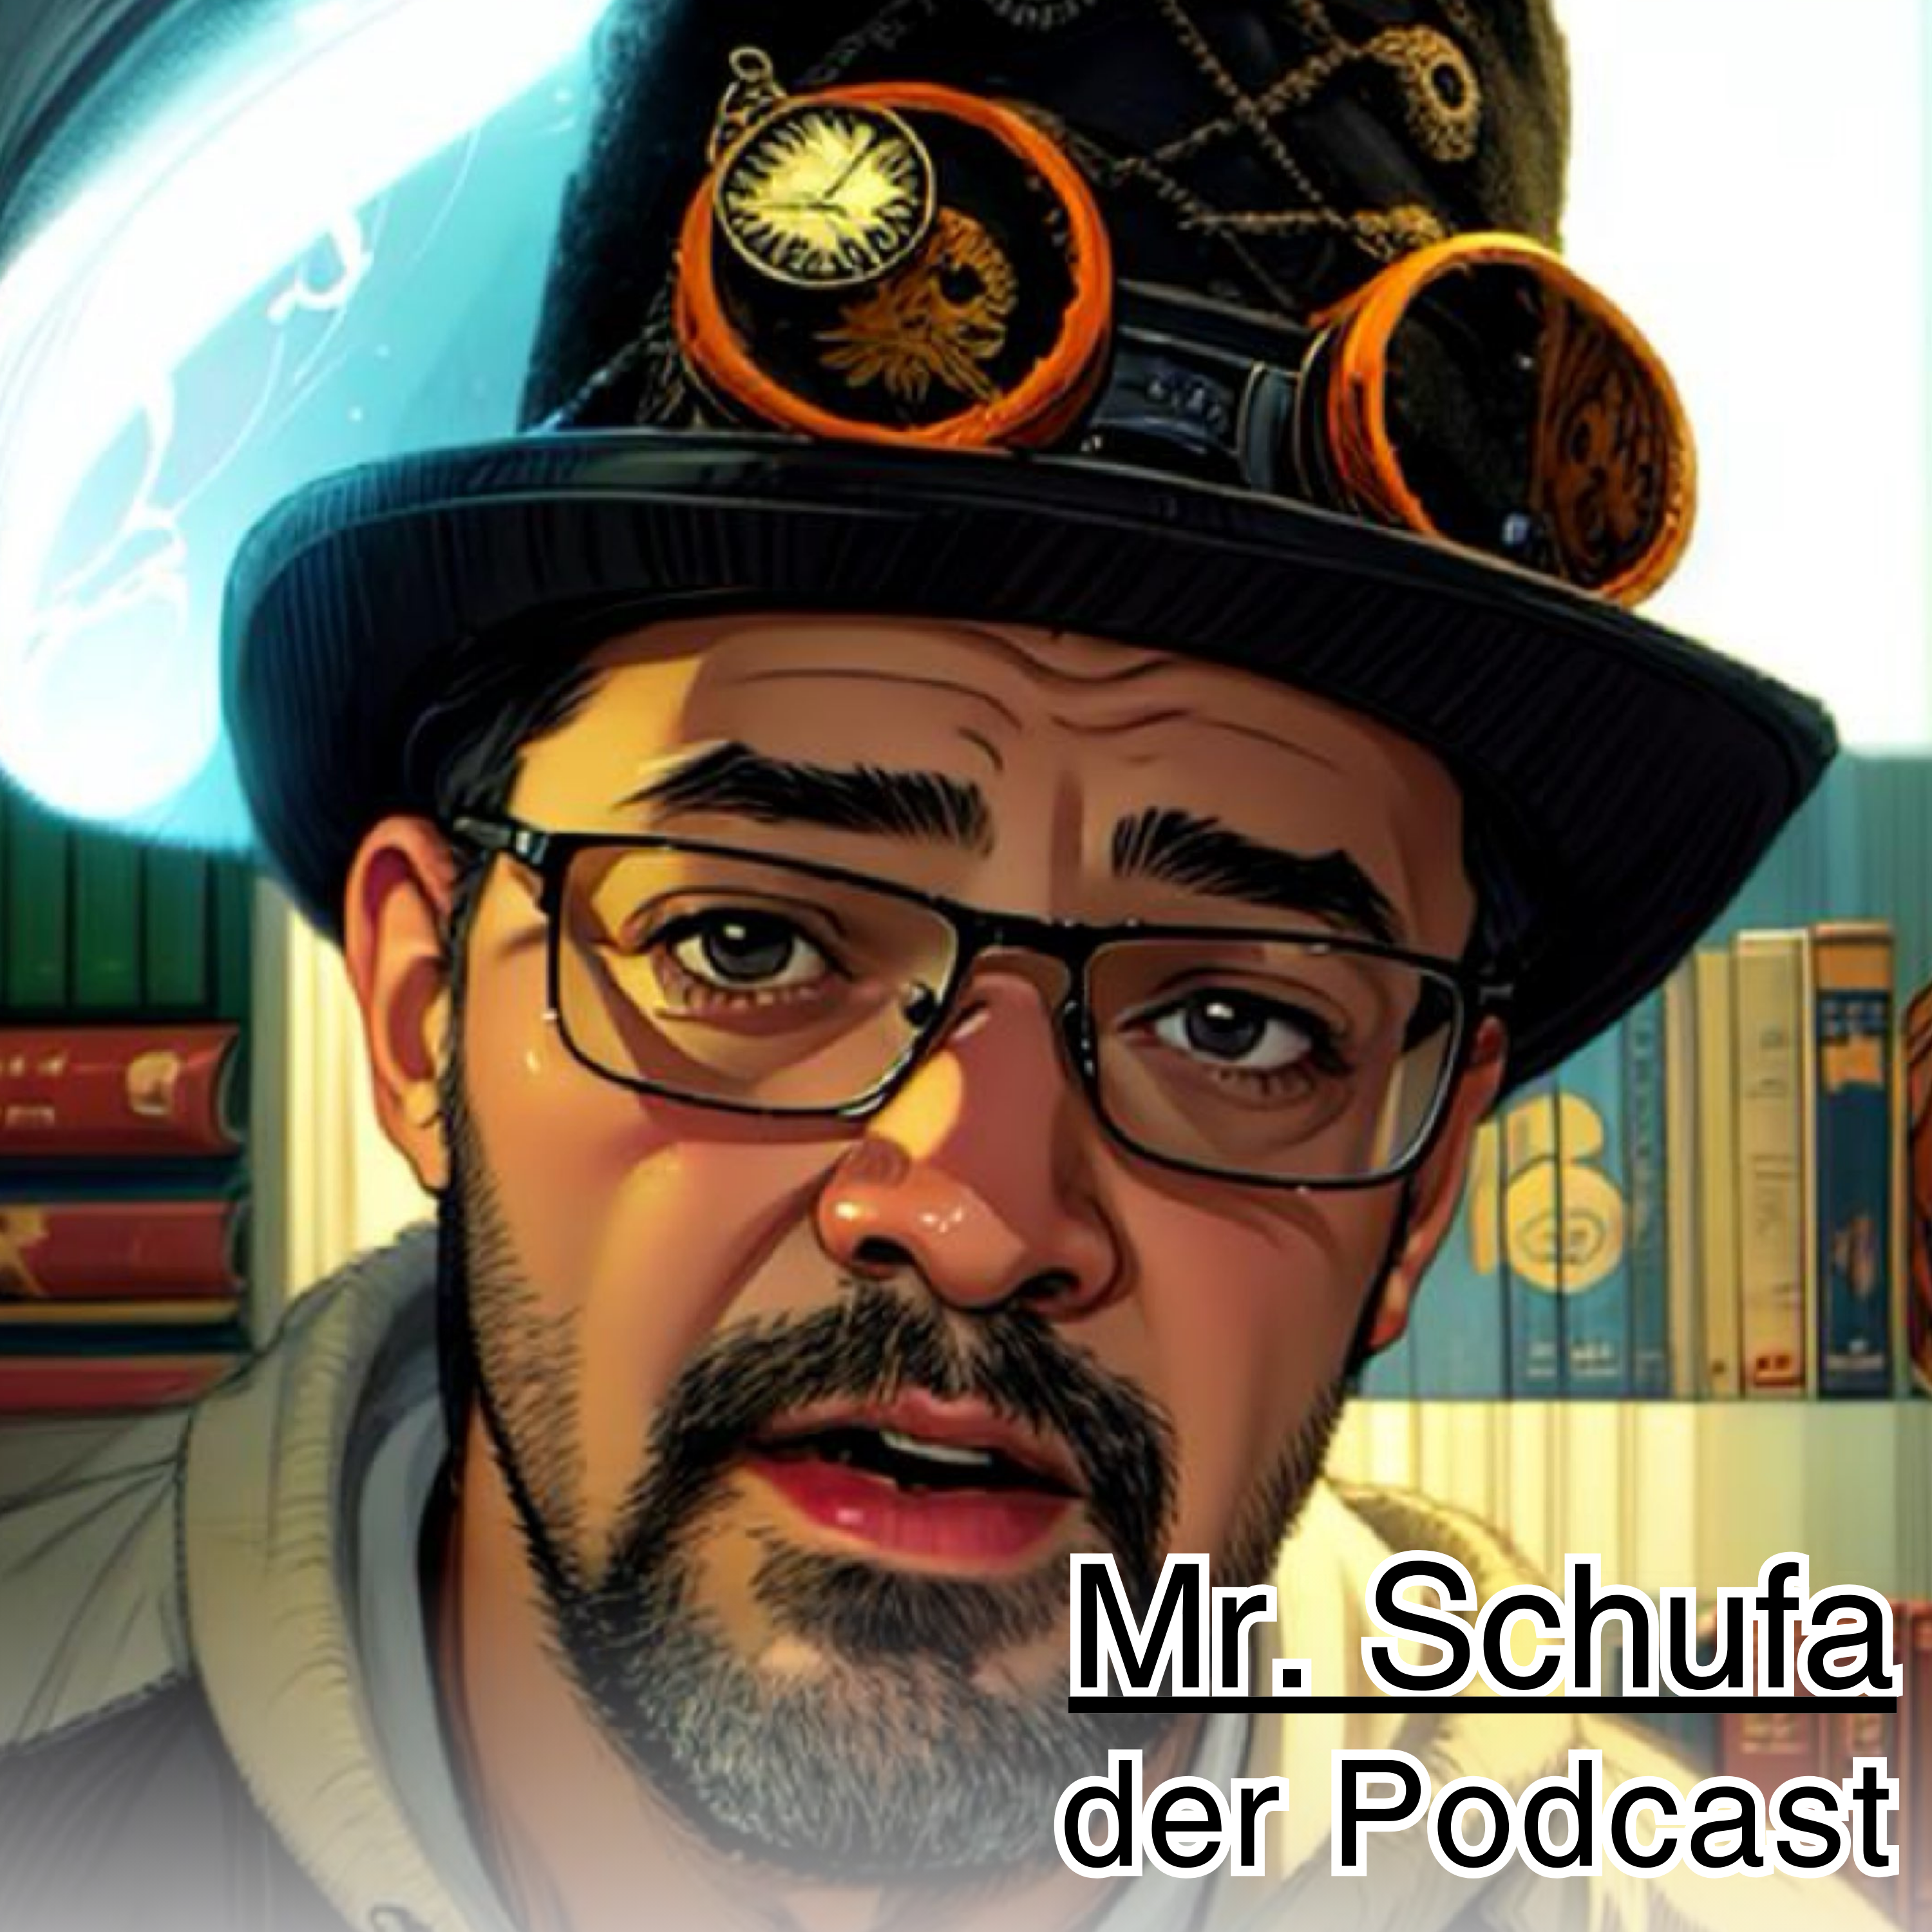 Vorgestellt: Der Mr. Schufa Podcast mit Tibor Bauer